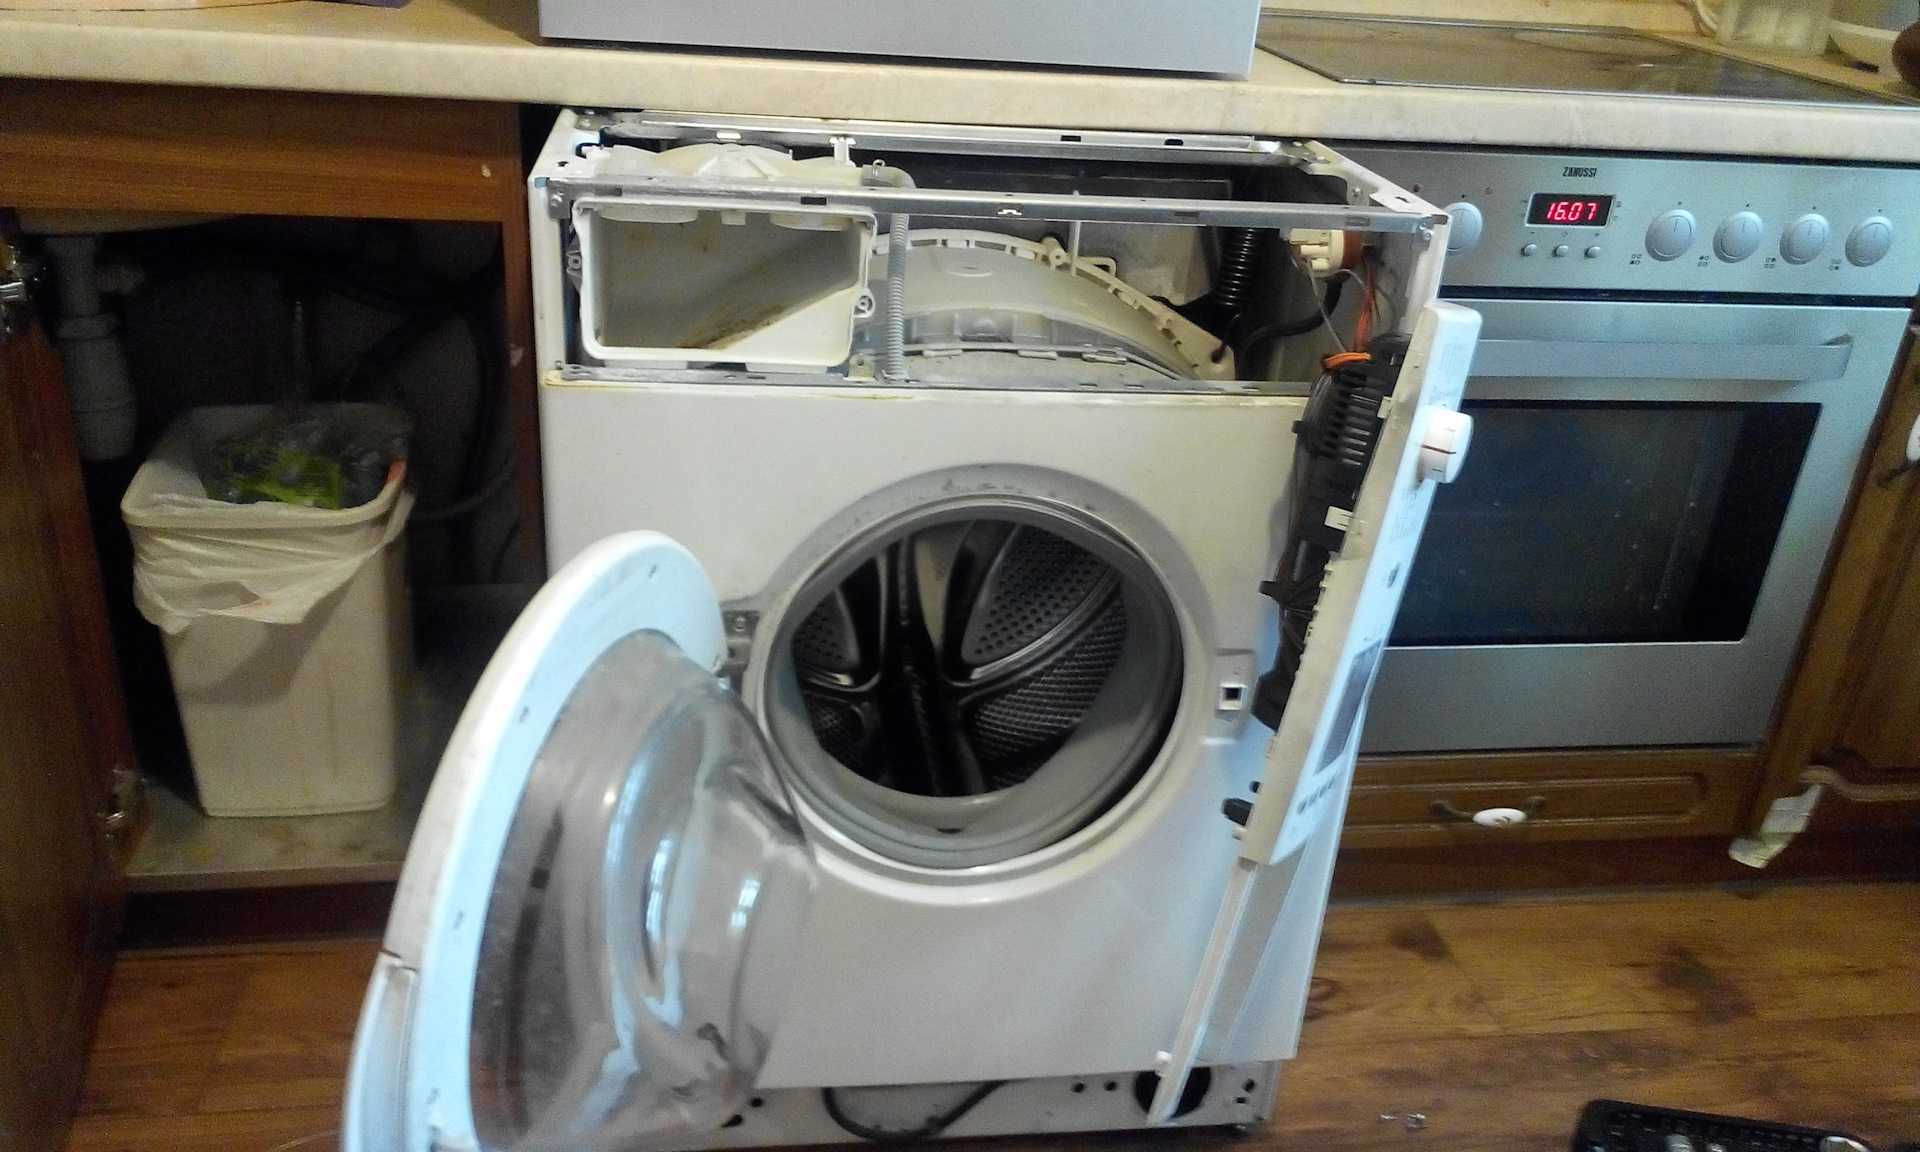 Ремонт стиральной машины бош (bosch) своими руками: видео, рекомендации